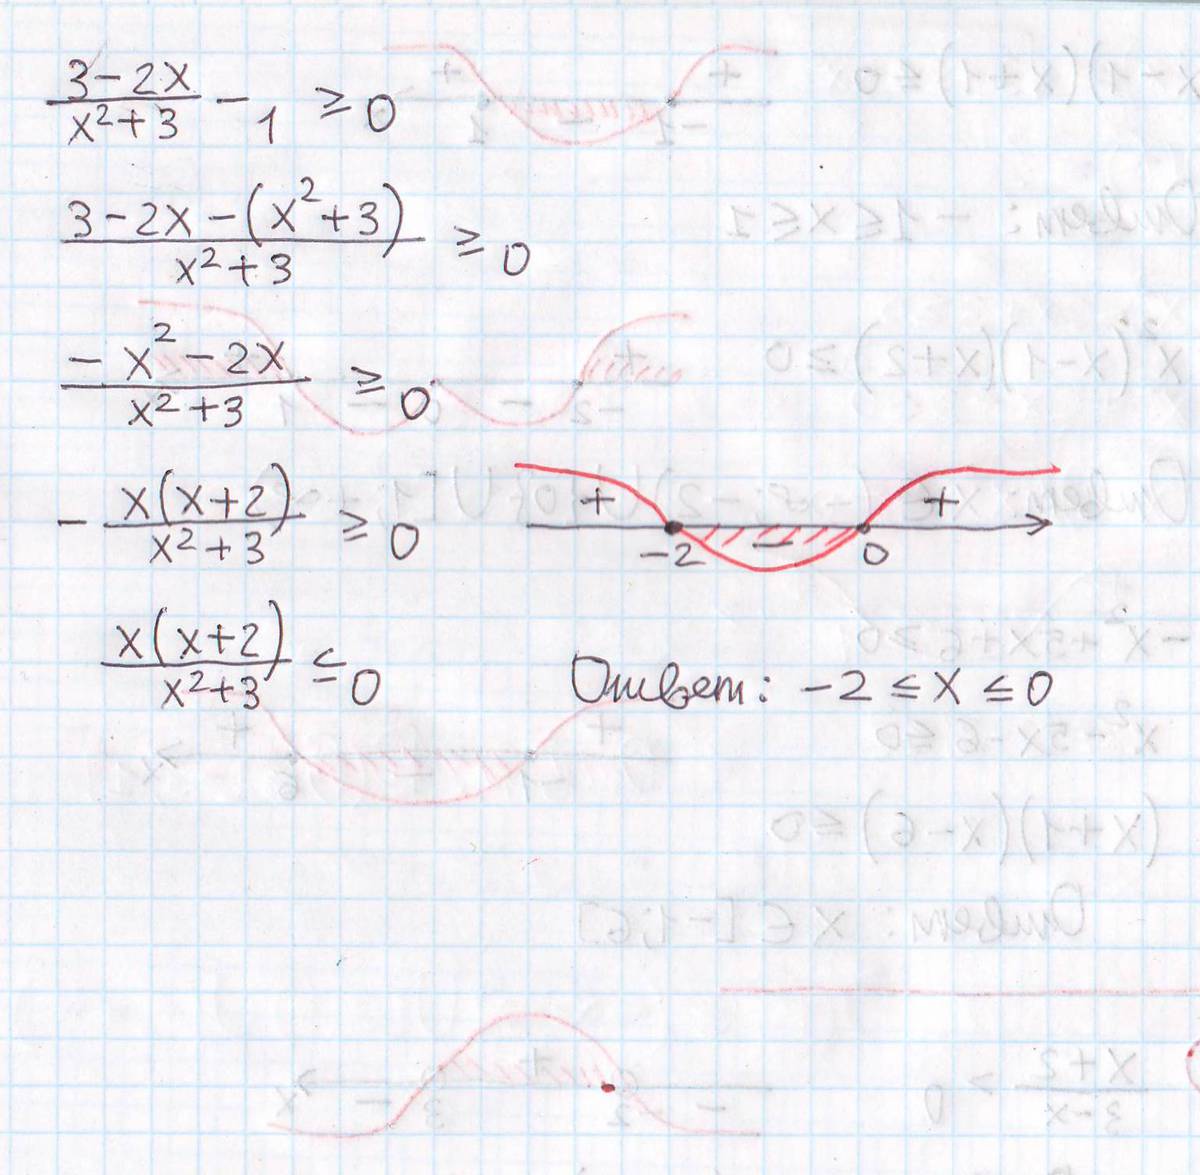 12x 2 4x 1 0. -X^2-3x+1=0. (1-X^3)^2(X^2-5x)=<0. X^3-X^2-X+1=0. 0.2 X^2 - 1.6 X + 3.2 = 0 2 = 0.